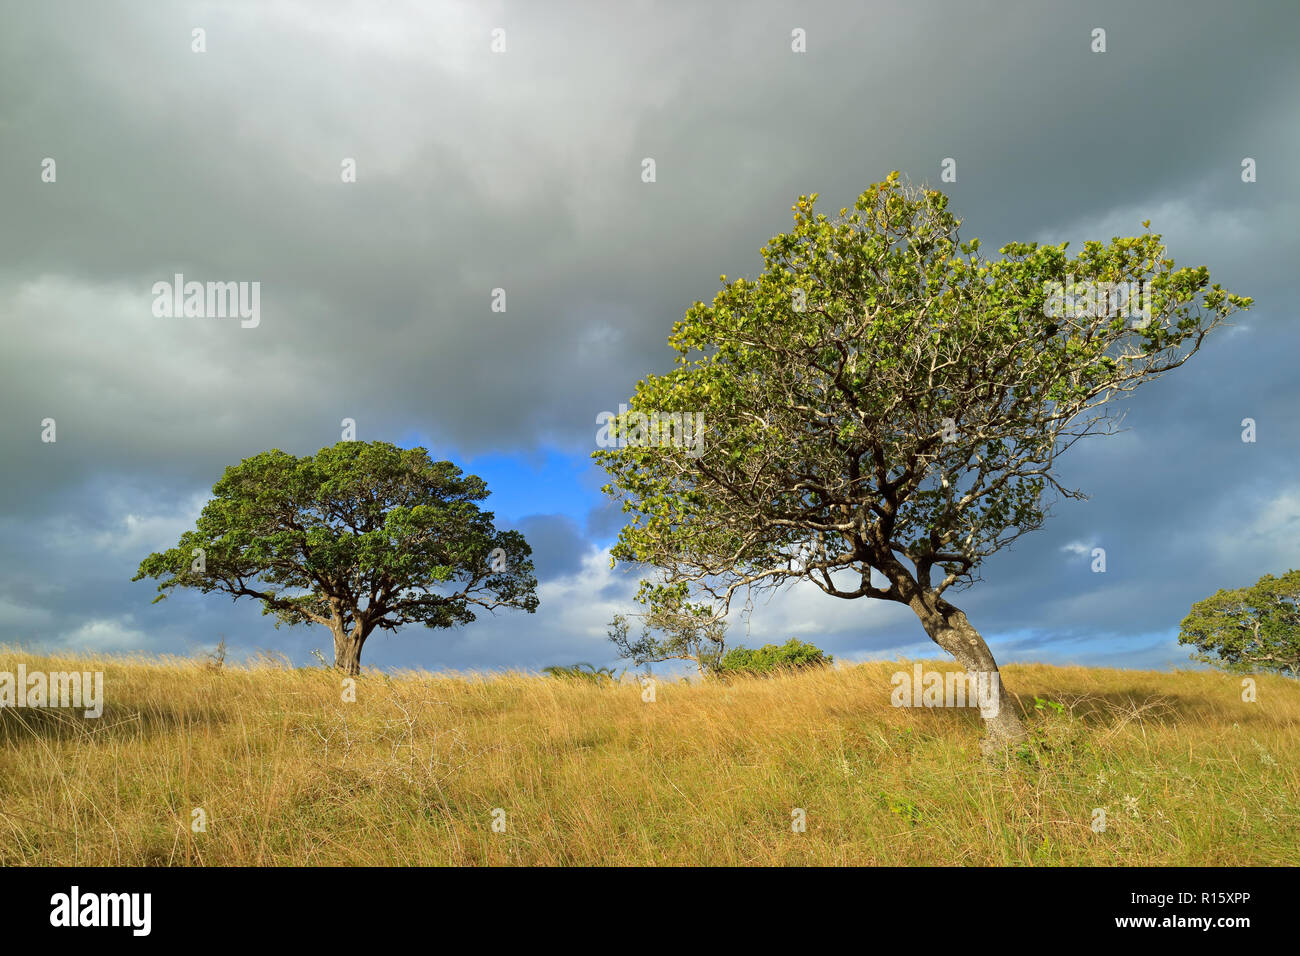 Afrikanische Savanne Landschaft mit Bäumen im Grünland mit einem bewölkten Himmel, Südafrika Stockfoto